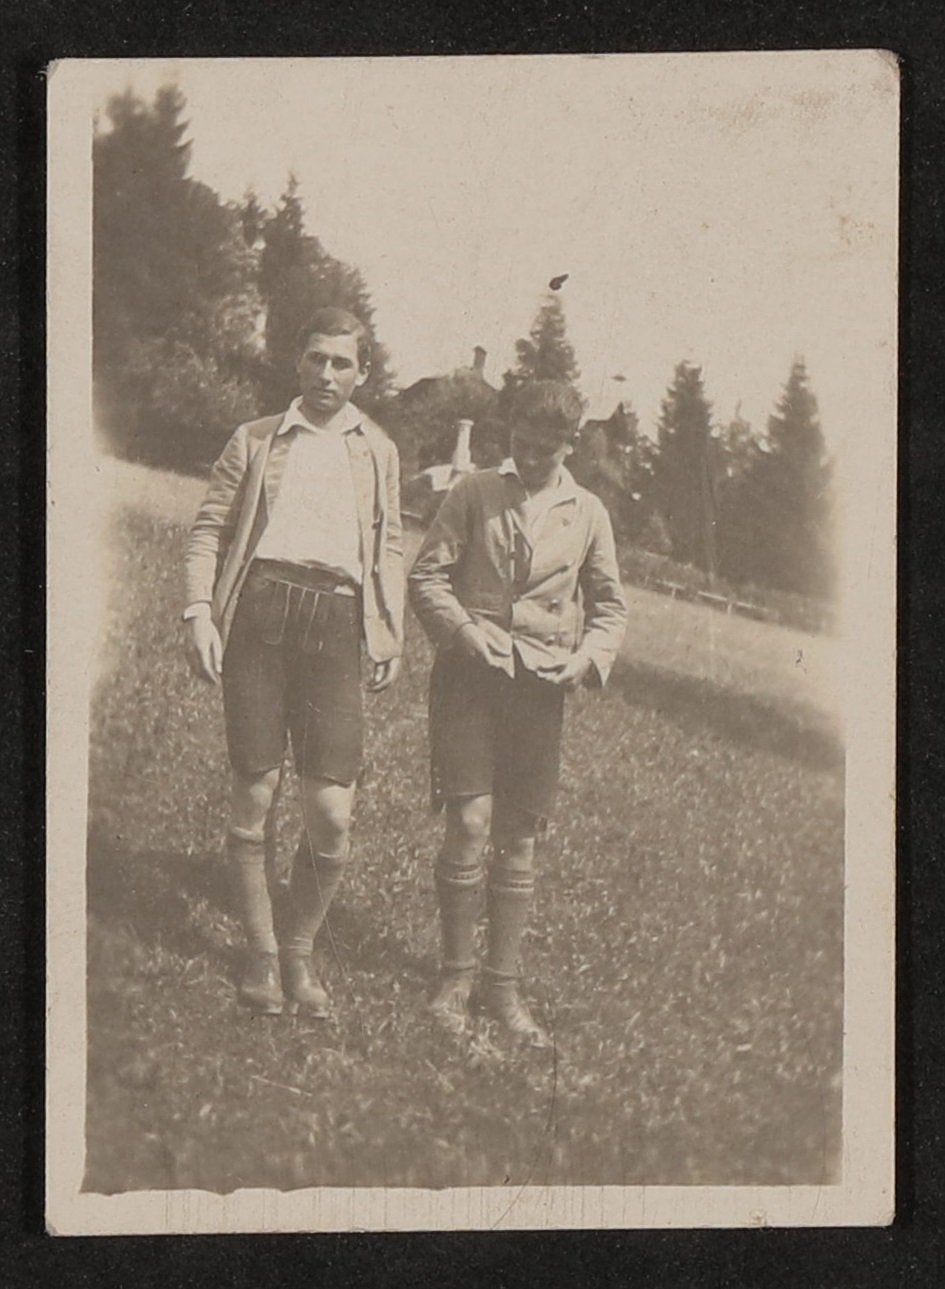 Zwei junge Männer, eventuell Raimund und Franz von Hofmannsthal, in Lederhosen auf einer Wiese (Freies Deutsches Hochstift / Frankfurter Goethe-Museum CC BY-NC-SA)